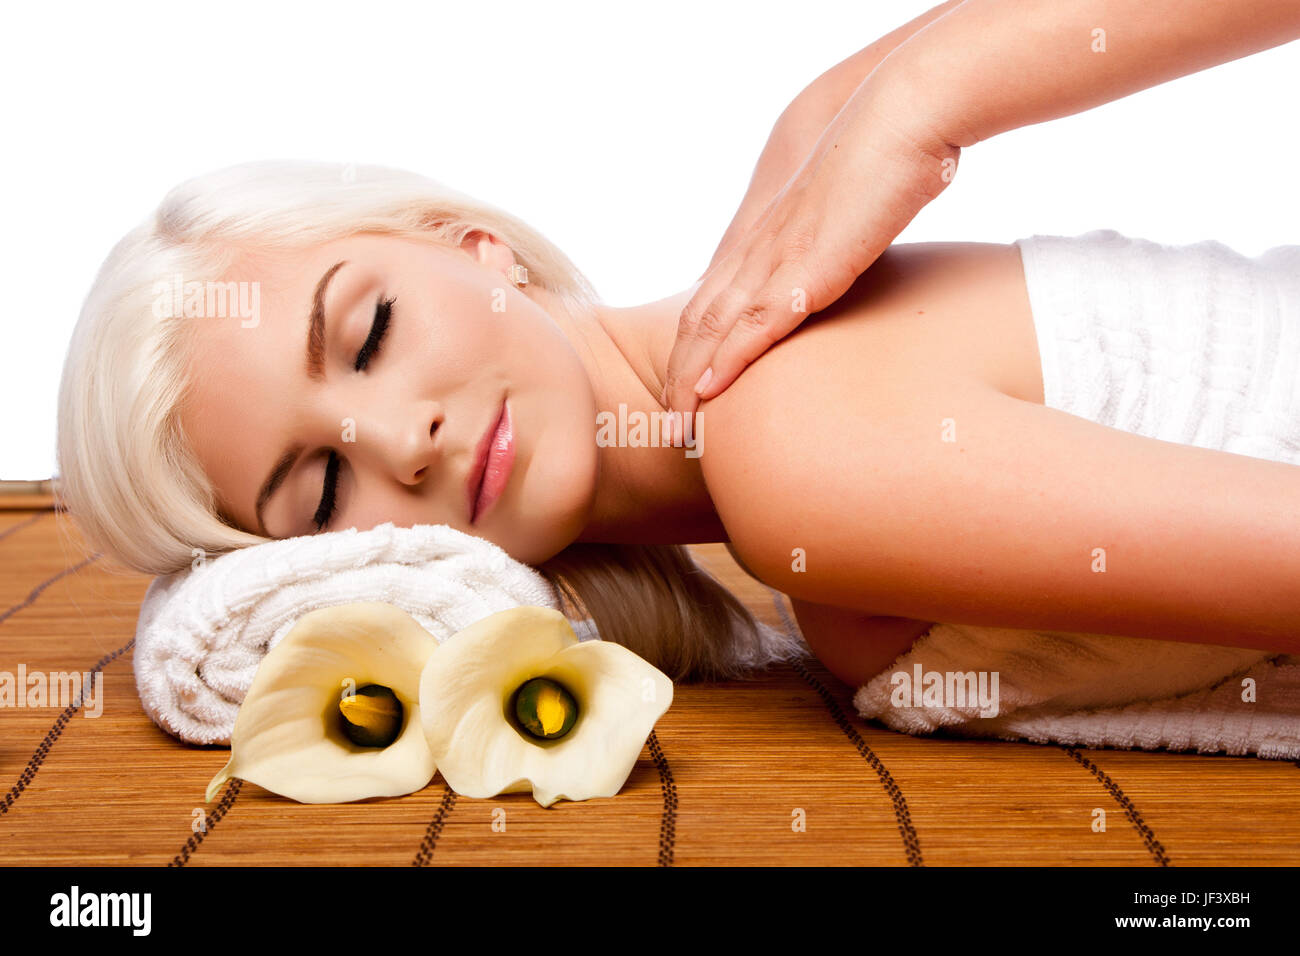 Soins de relaxation spa massage de l'épaule Banque D'Images